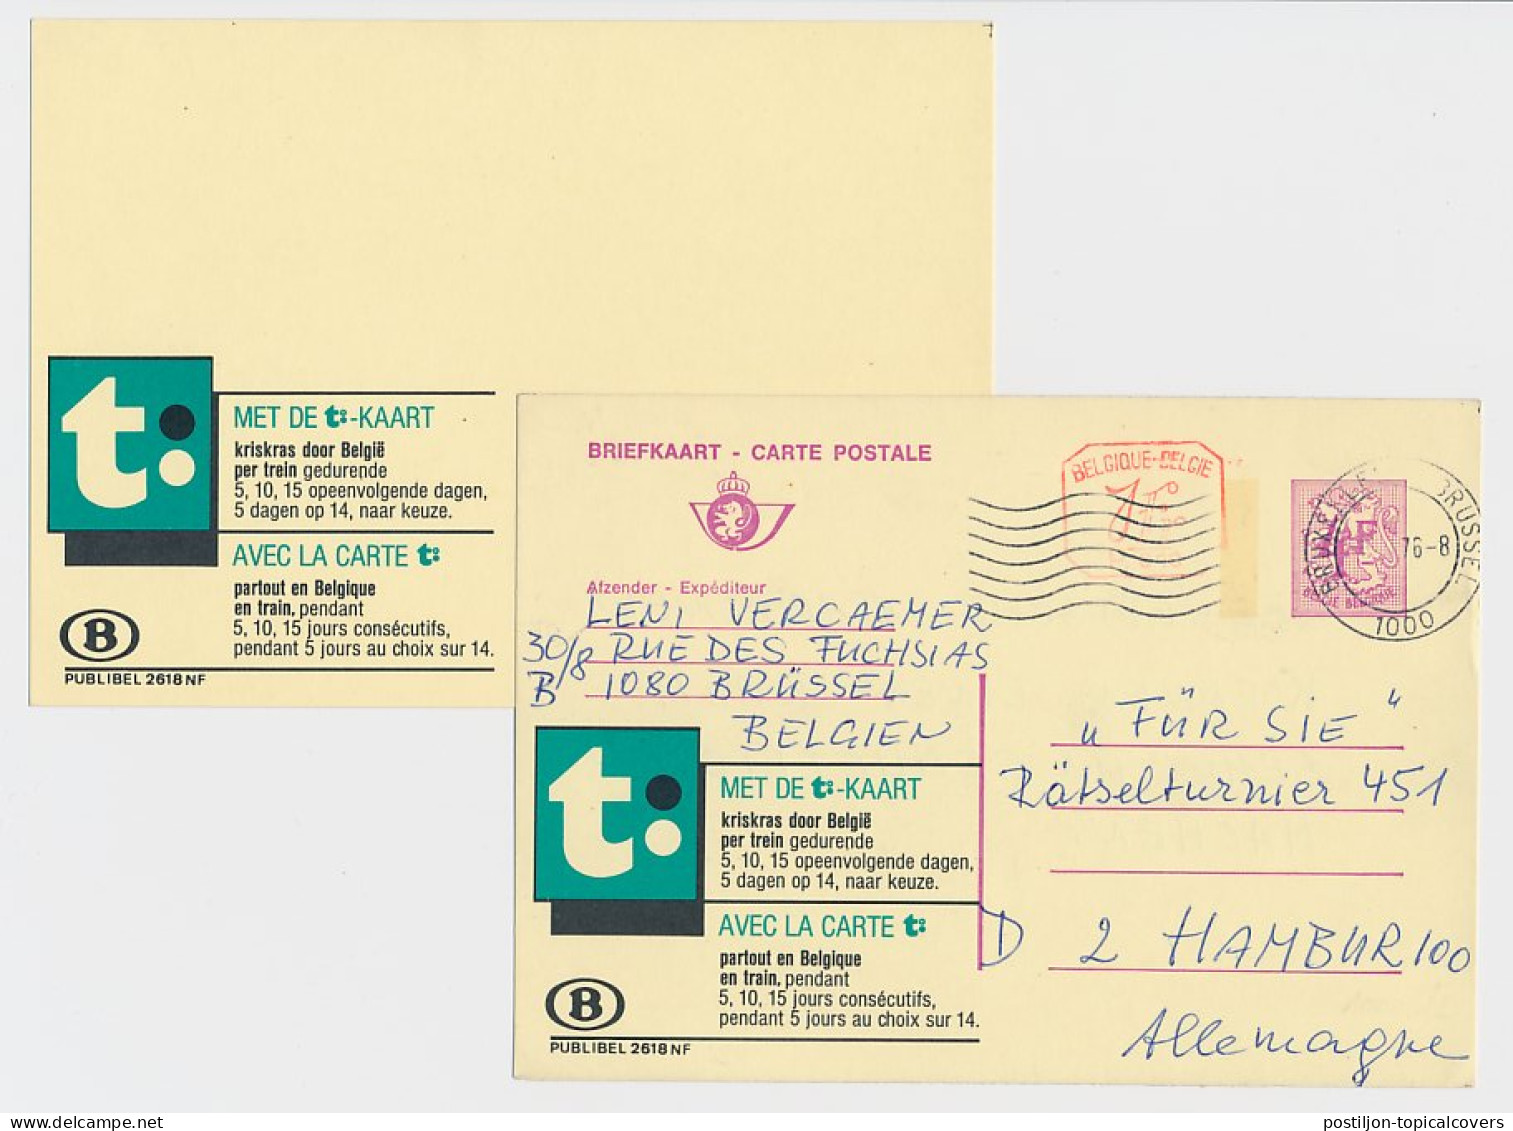 Essay / Proof Publibel Card Belgium 1976 - Publibel 2618 Train Ticket - Trains